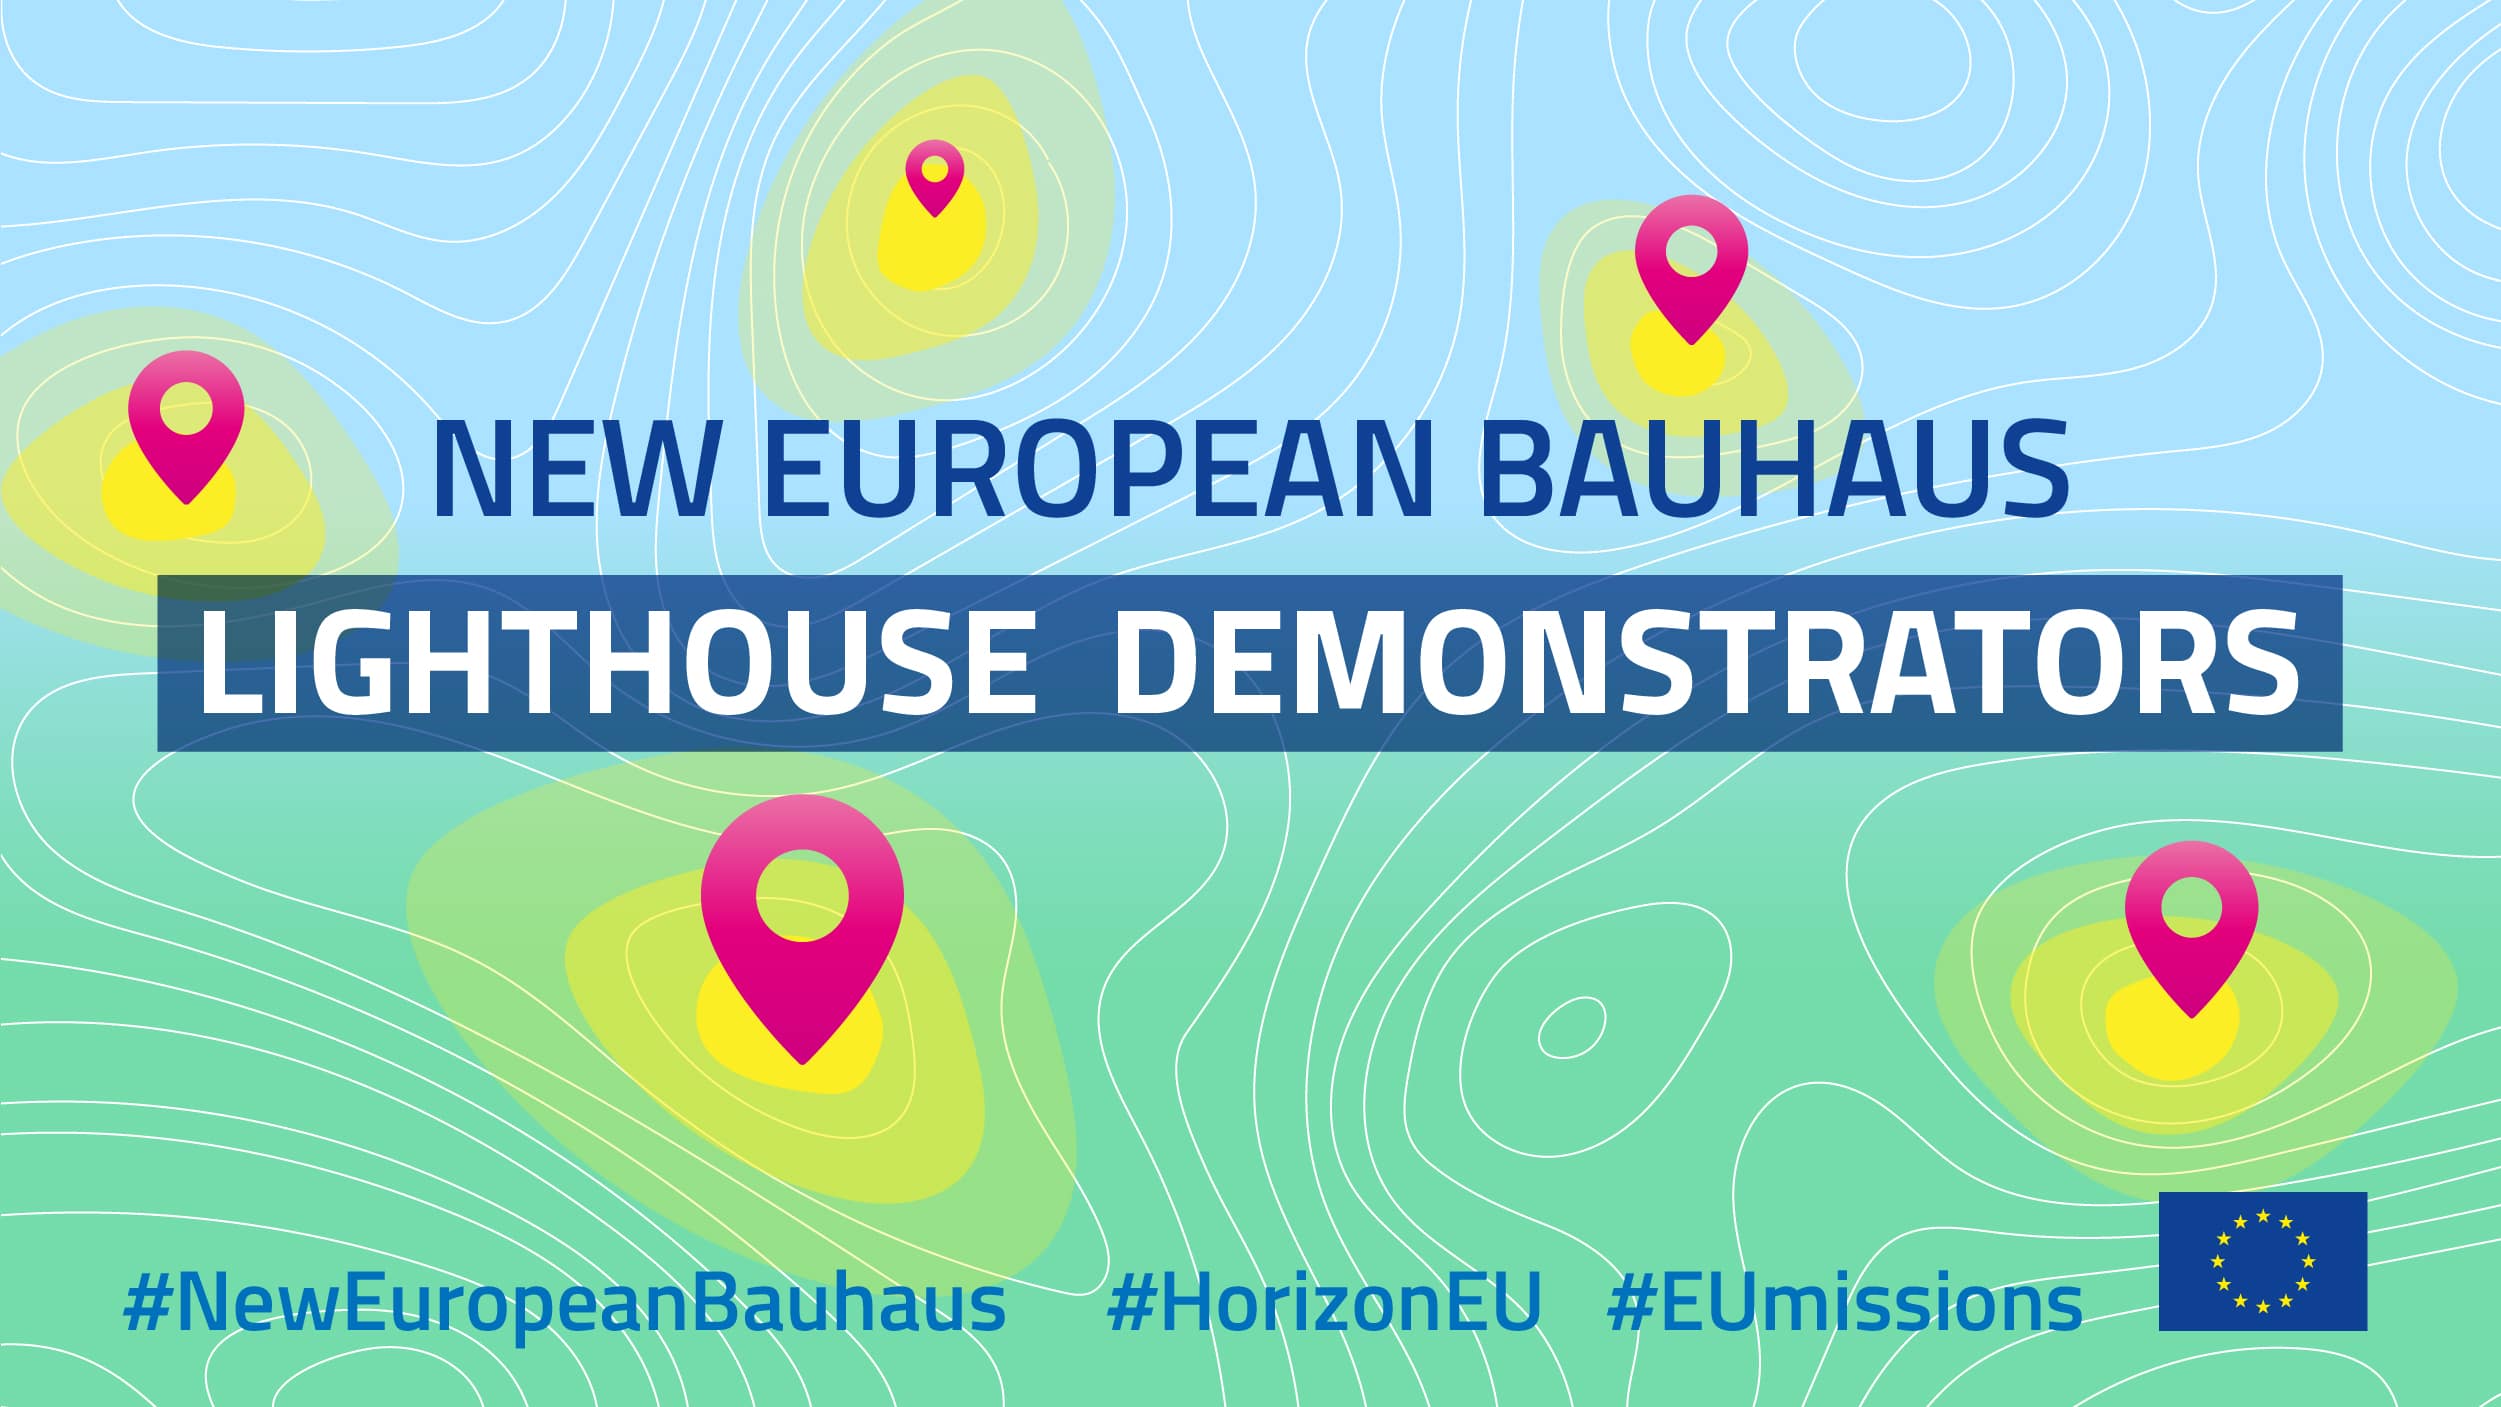 Image : Nouveau Bauhaus européen / Commission européenne